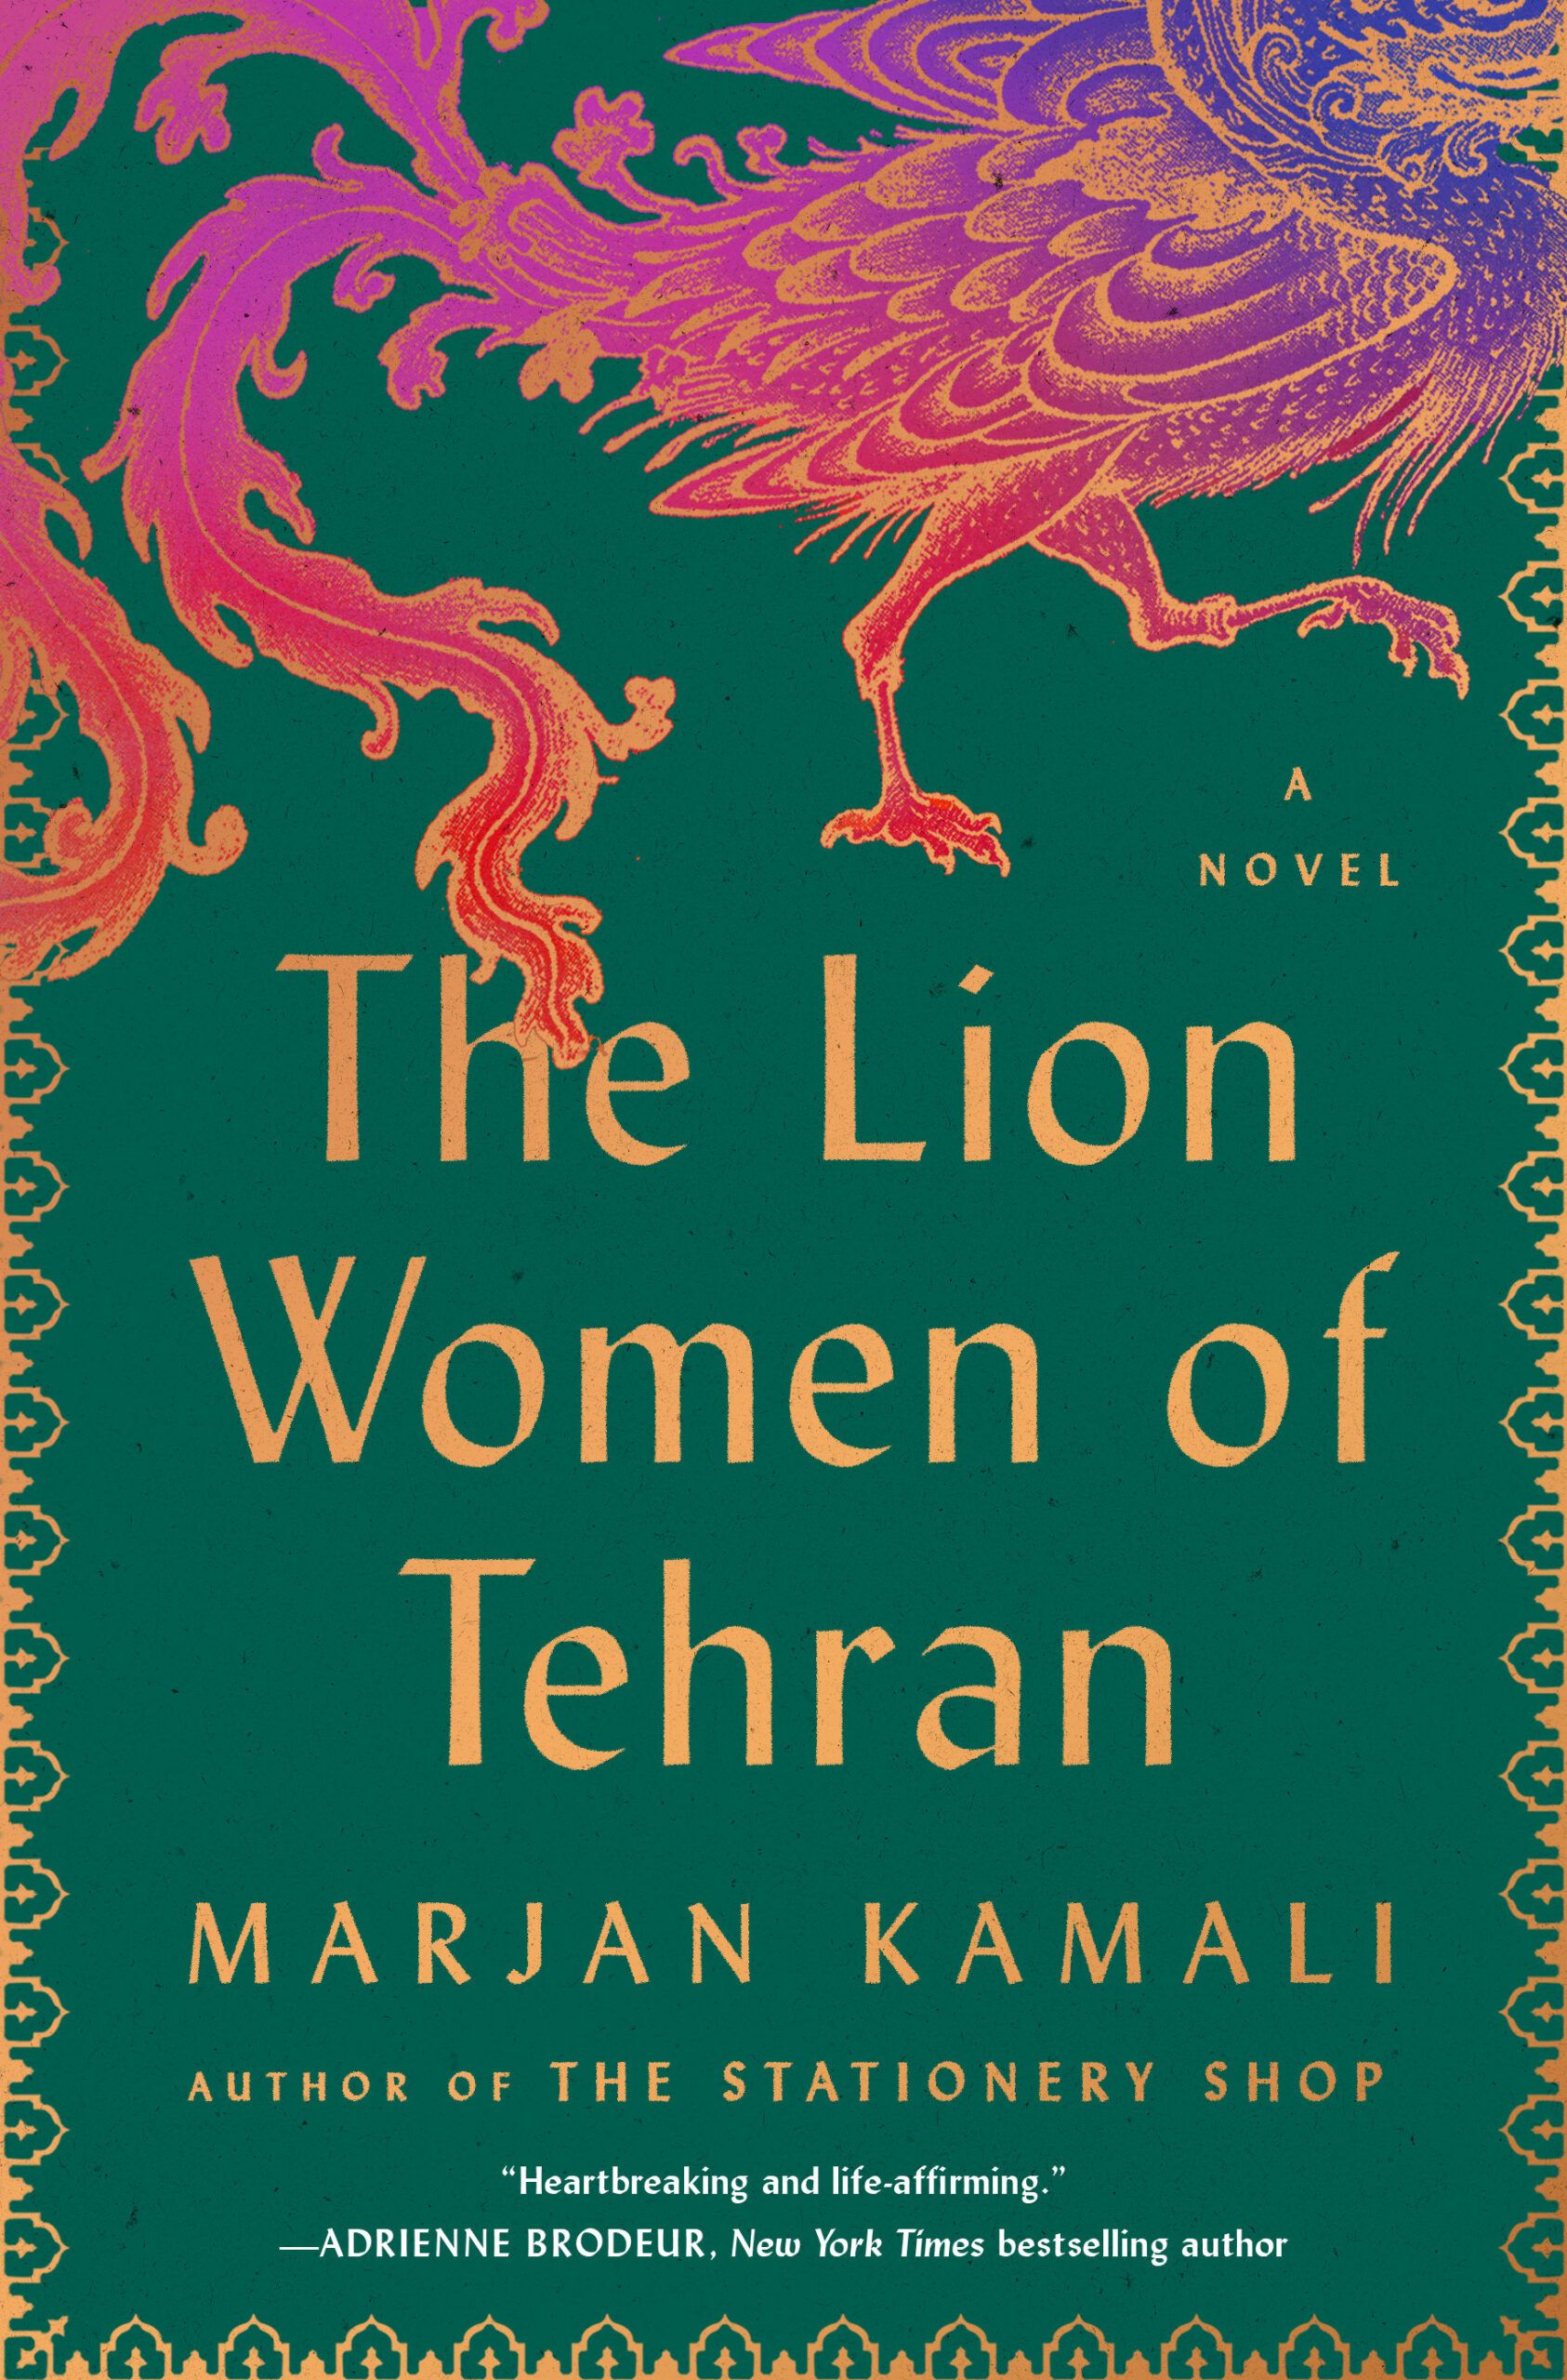 Cover of “The Lion Women of Tehran” by Marjan Kamali